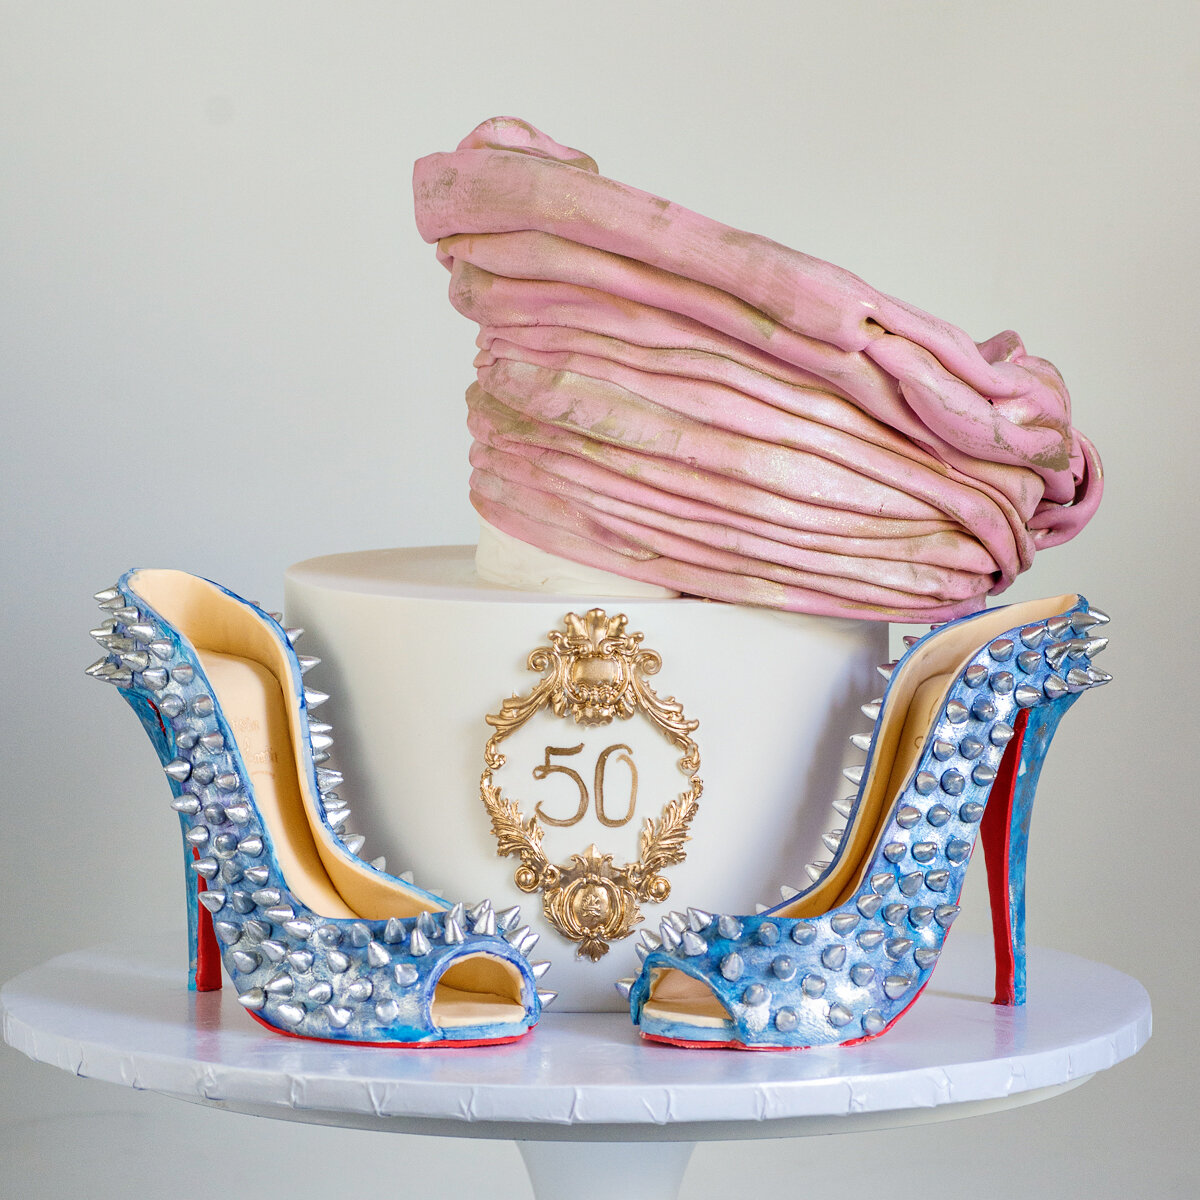 Louboutin 50th Birthday Cake